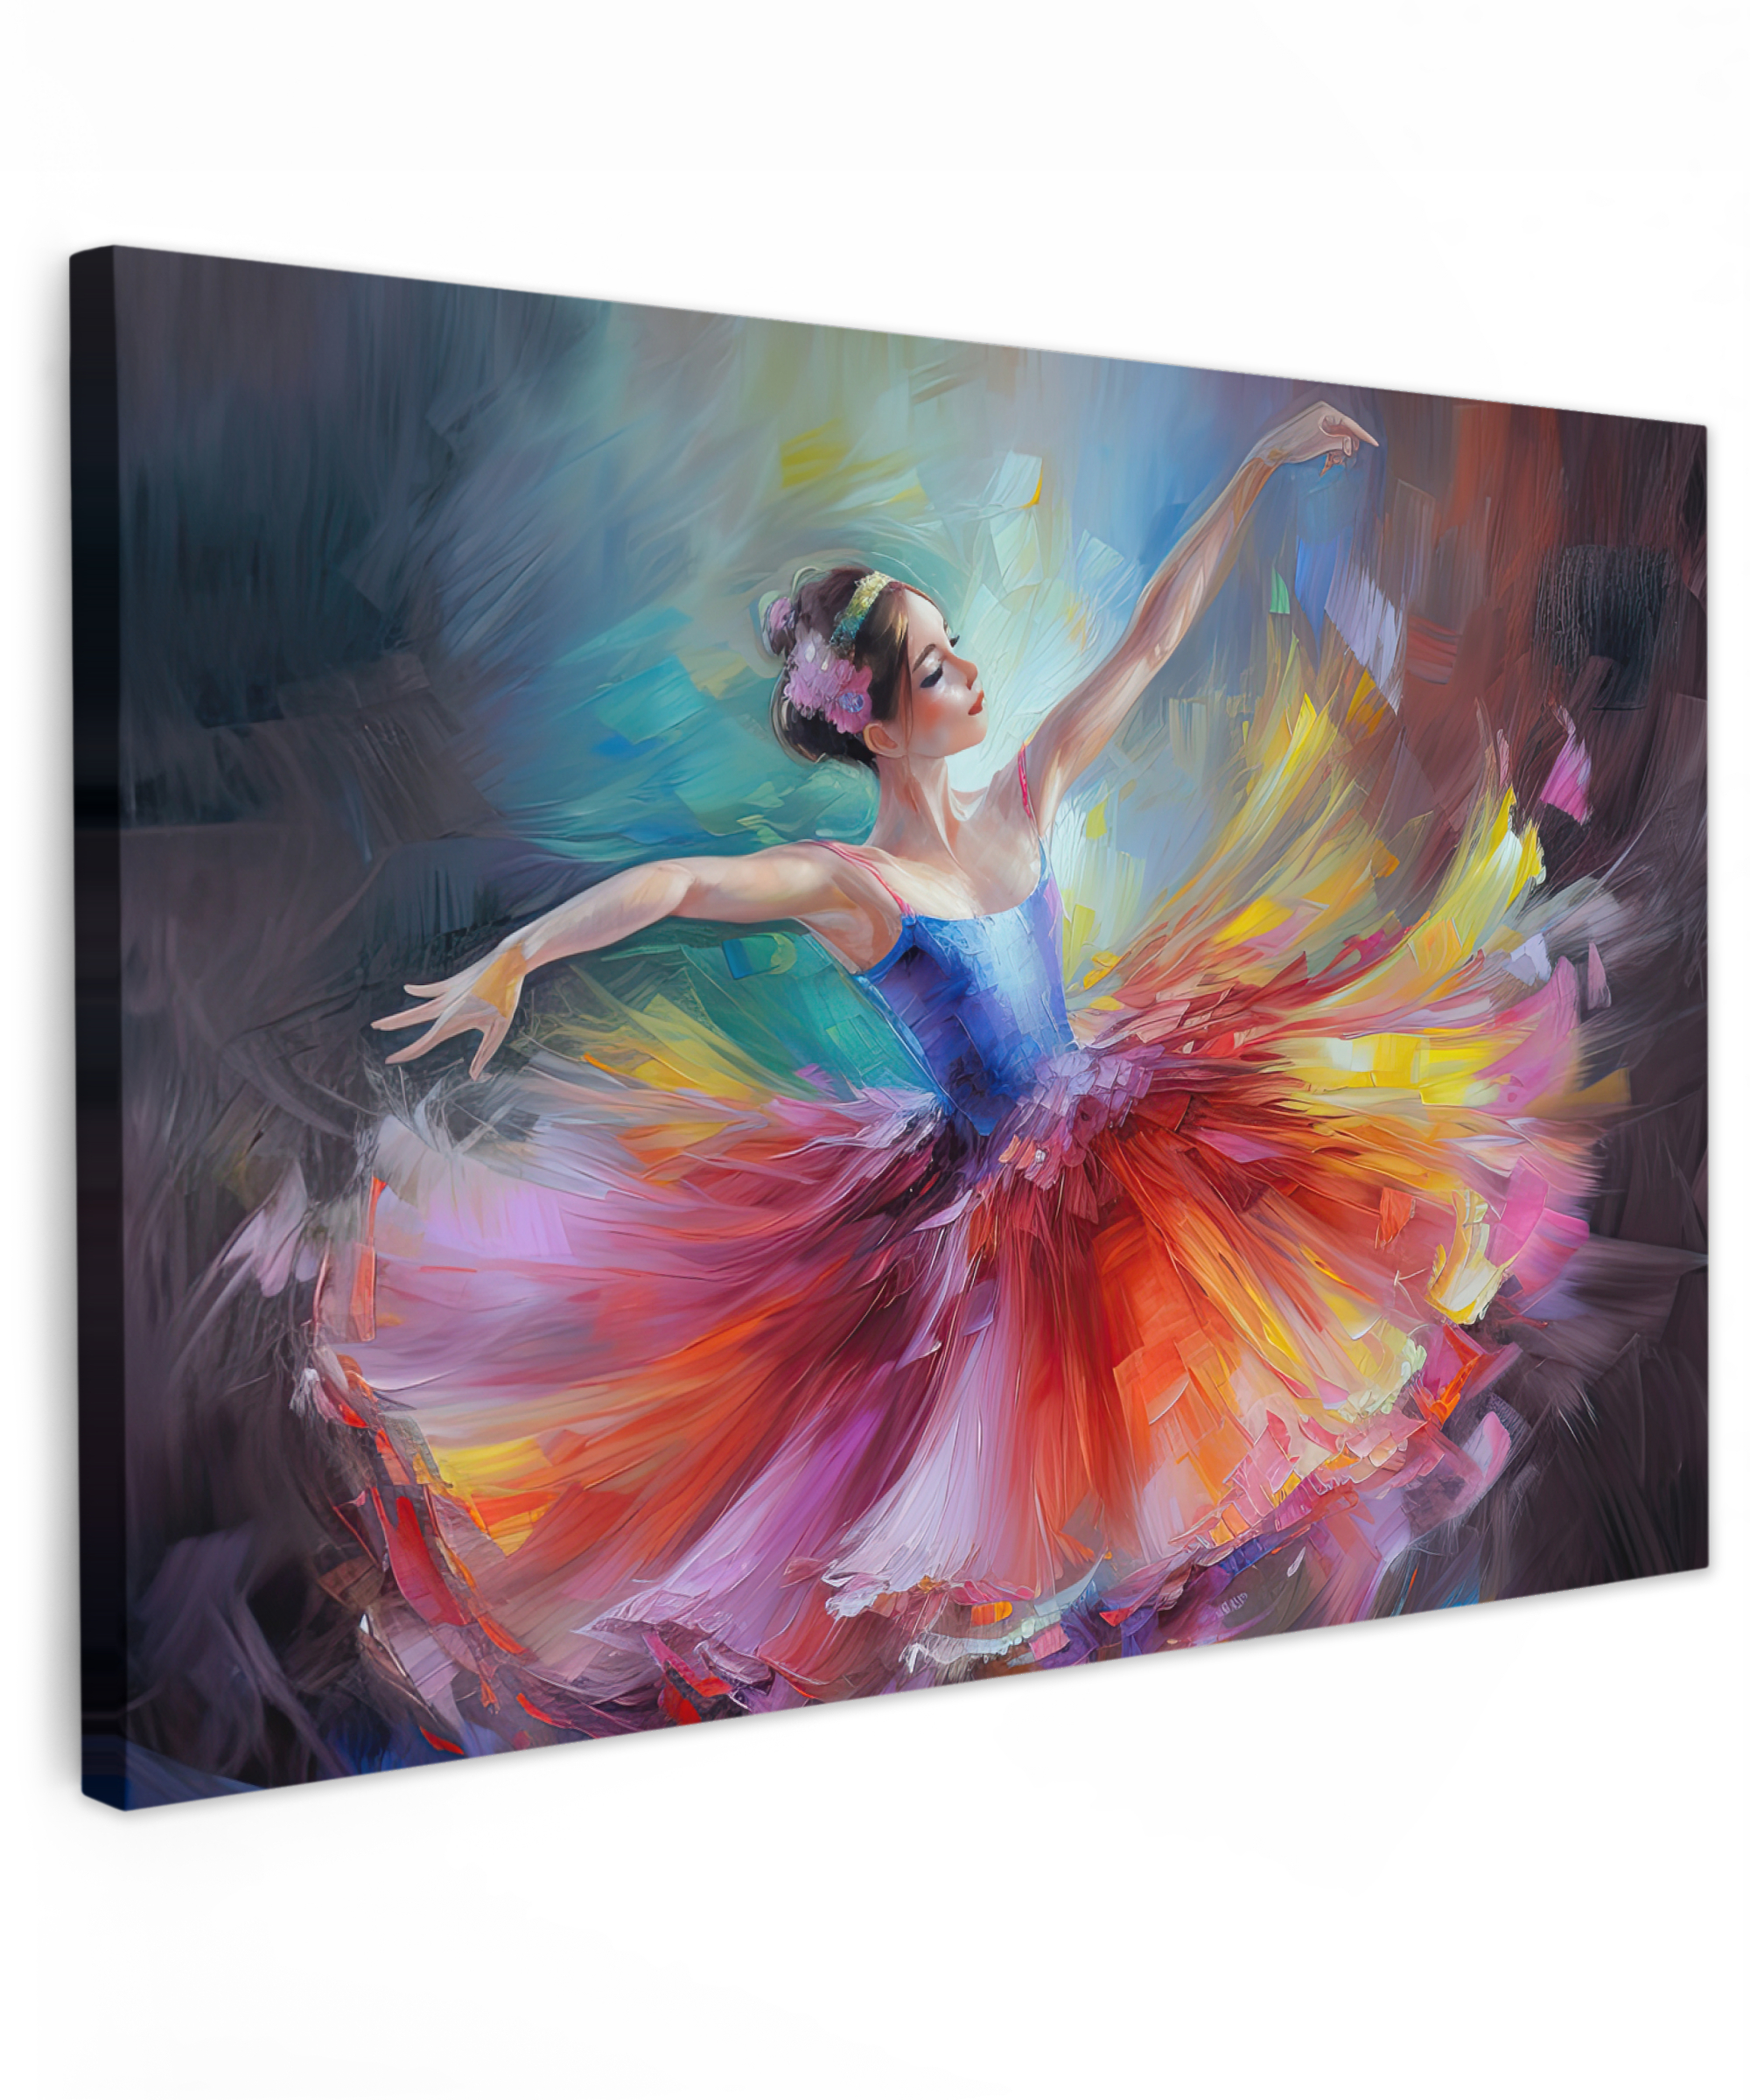 Leinwandbild - Gemälde - Ölfarbe - Tanz - Ballerina